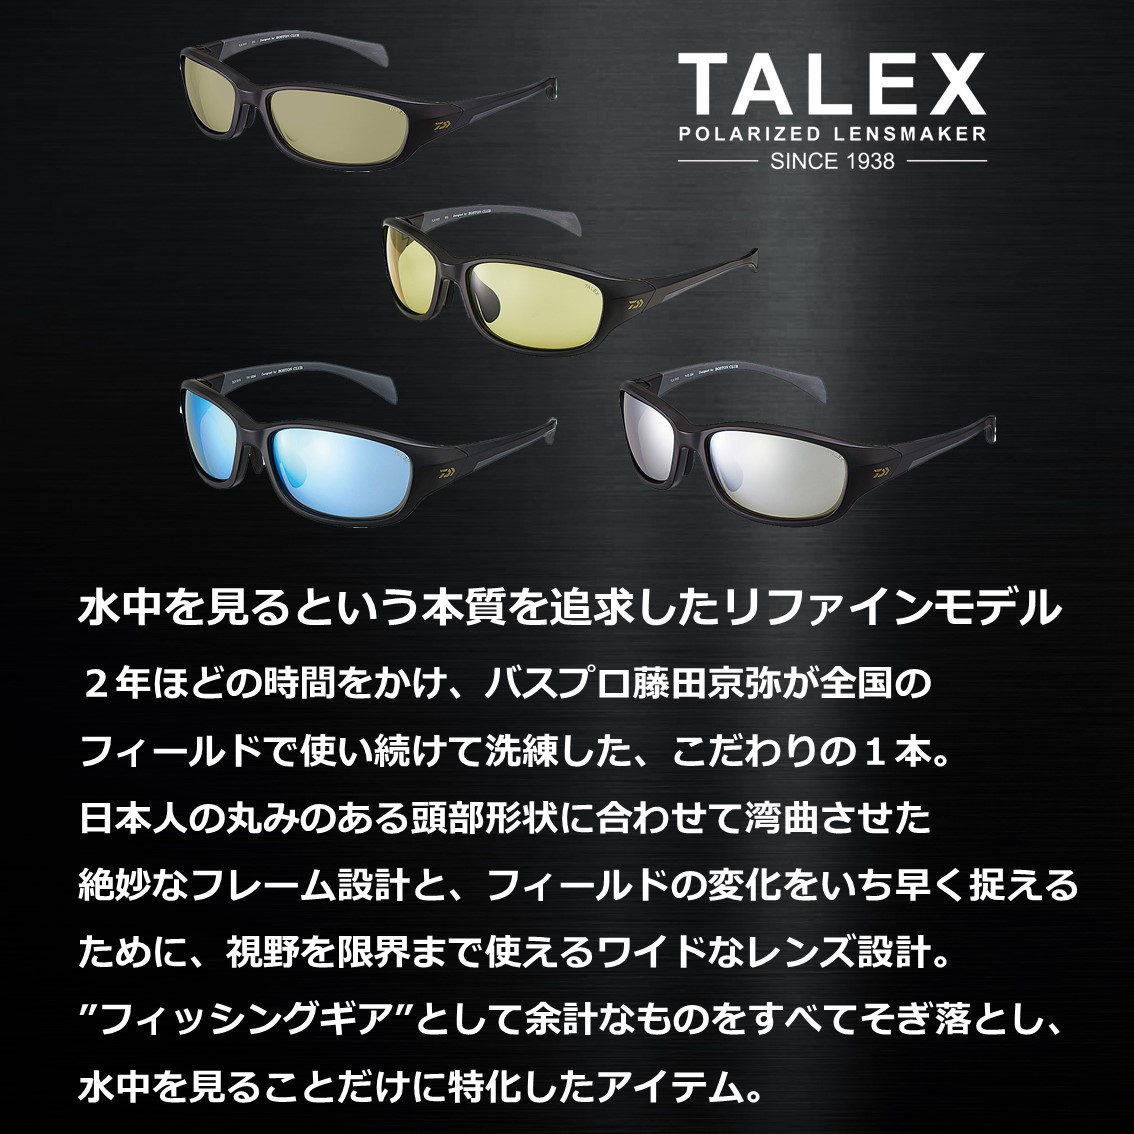 ダイワ タレックス 偏光グラス トゥルービュースポーツ TLX015 (偏光サングラス 偏光グラス 釣り メンズ) - 釣り具の販売、通販なら